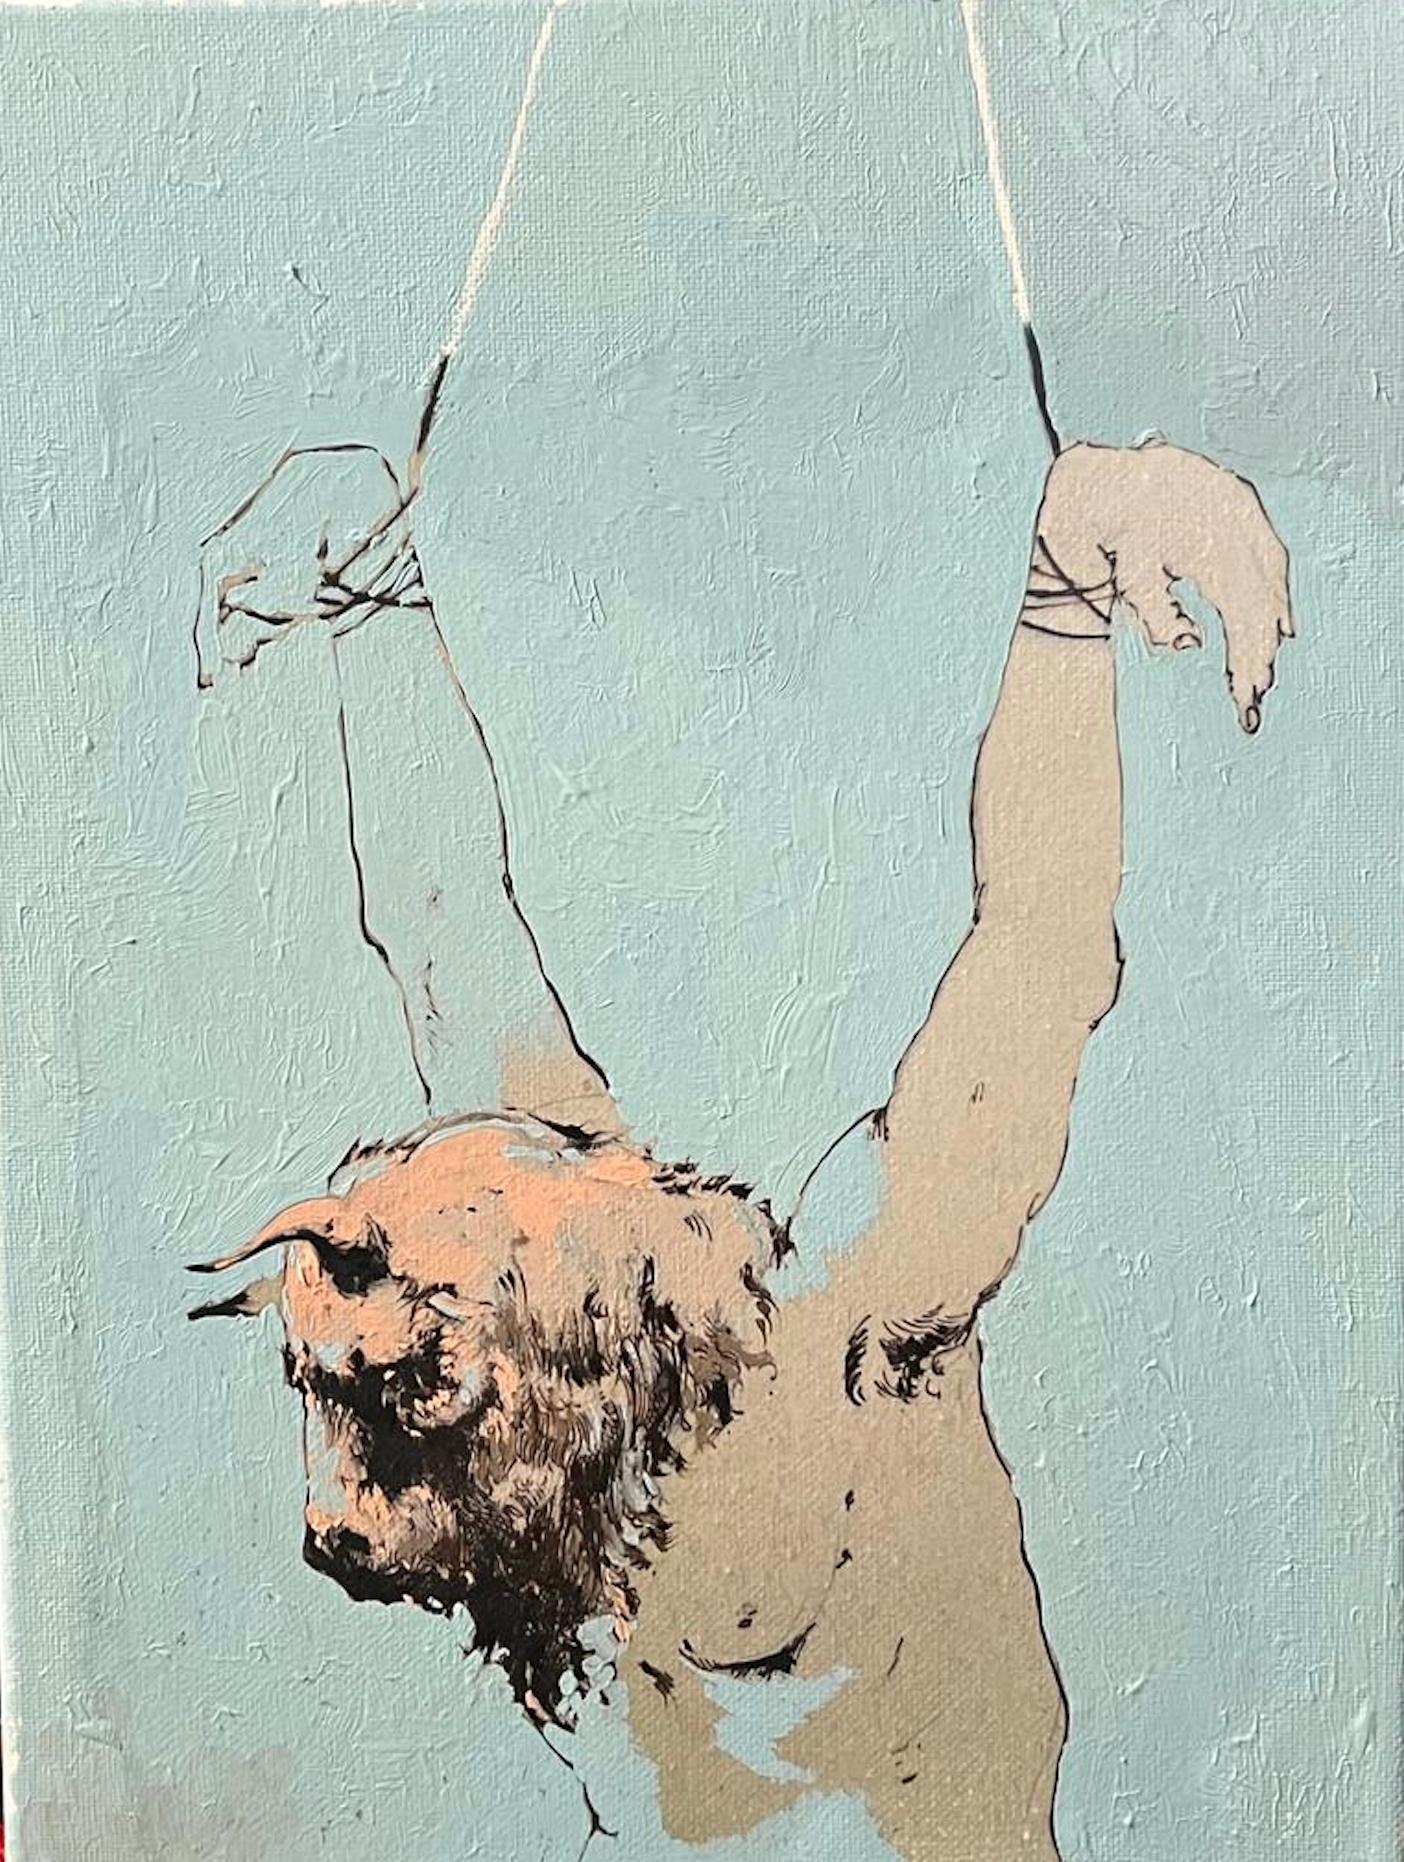 Peinture d'un Minotaure, toile à l'huile originale de l'artiste cubain